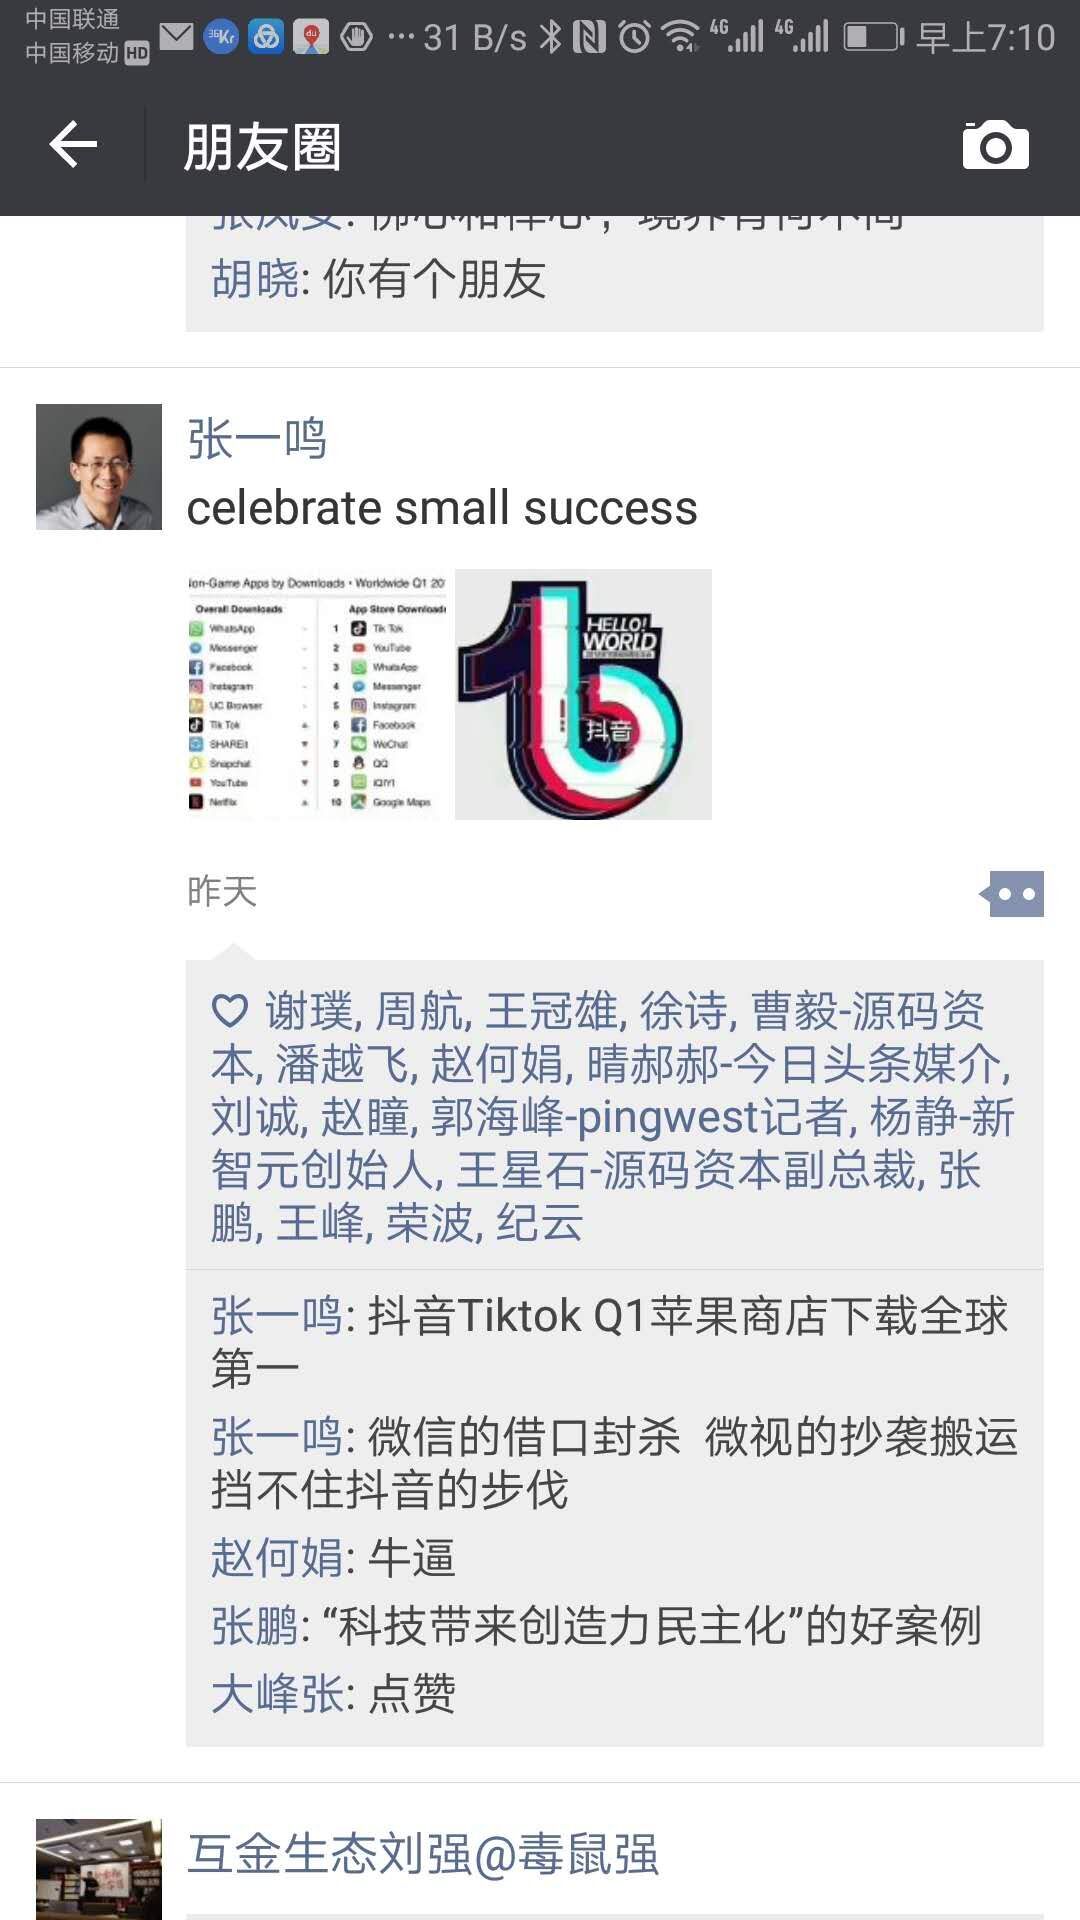 张一鸣发布朋友圈庆祝抖音Tiktok Q1苹果商店